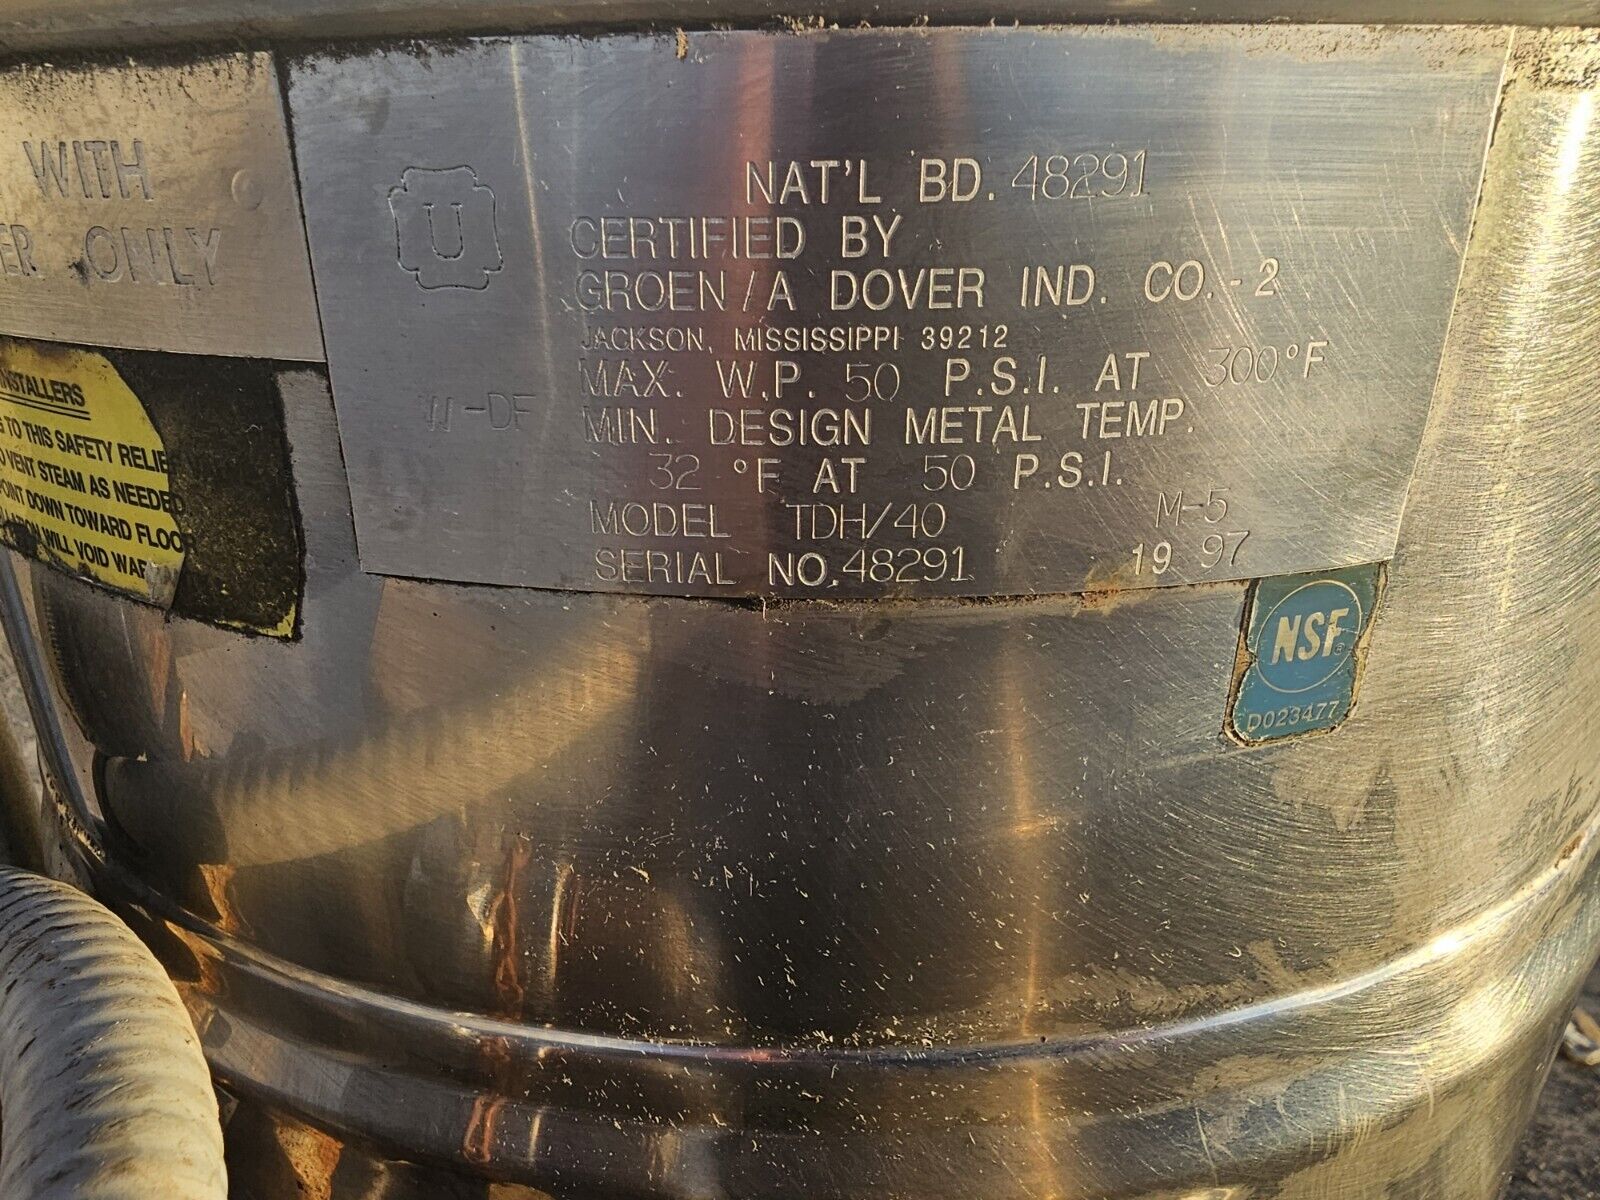 Groen 40 Quarts steam kettle TDH/ 40